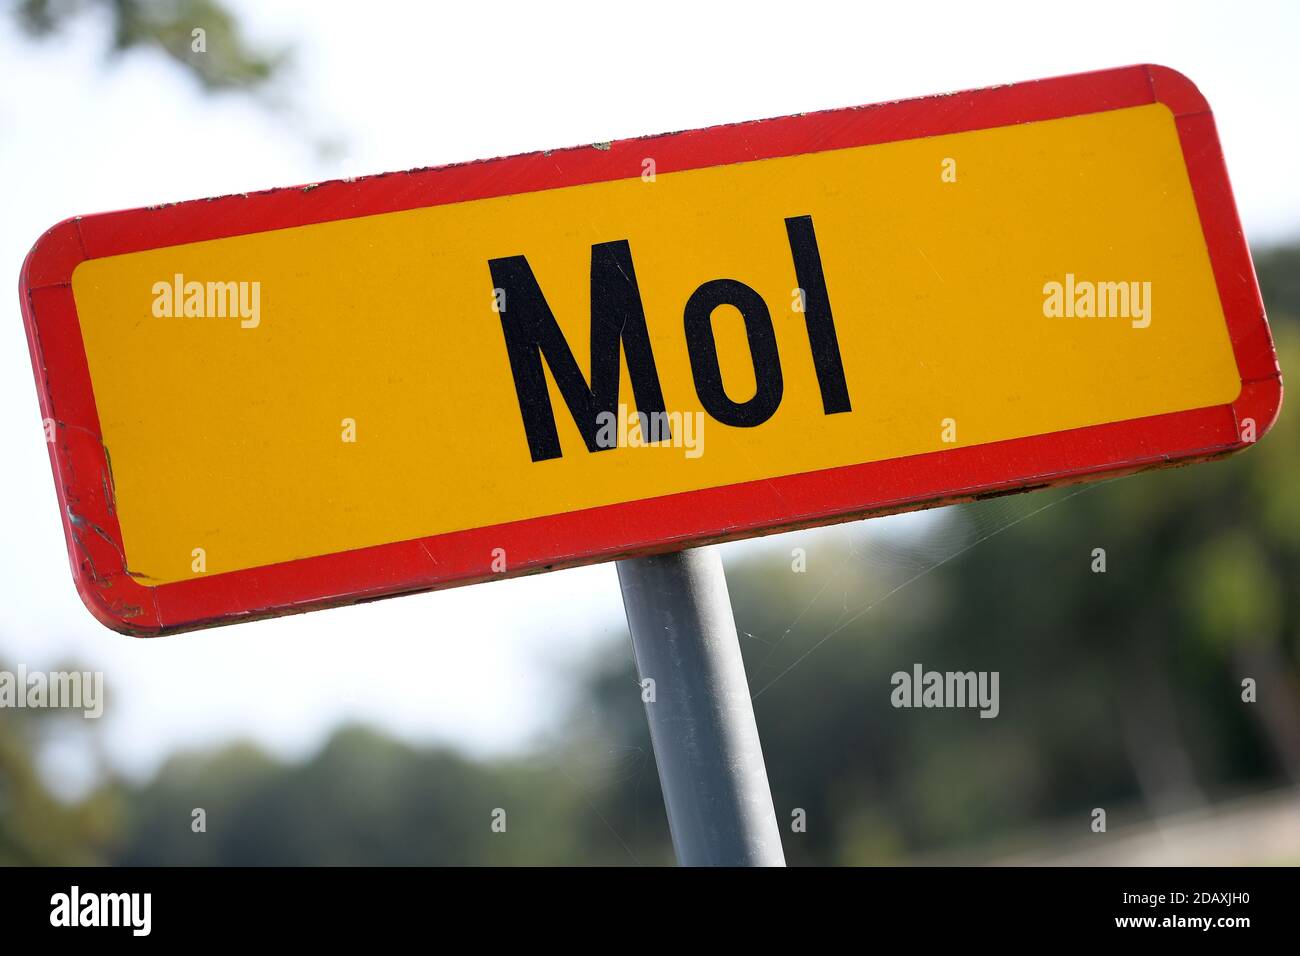 Abbildung zeigt den Namen der Gemeinde Mol auf einem Straßenschild, Freitag 21 September 2018. BELGA FOTO YORICK JANSENS Stockfoto